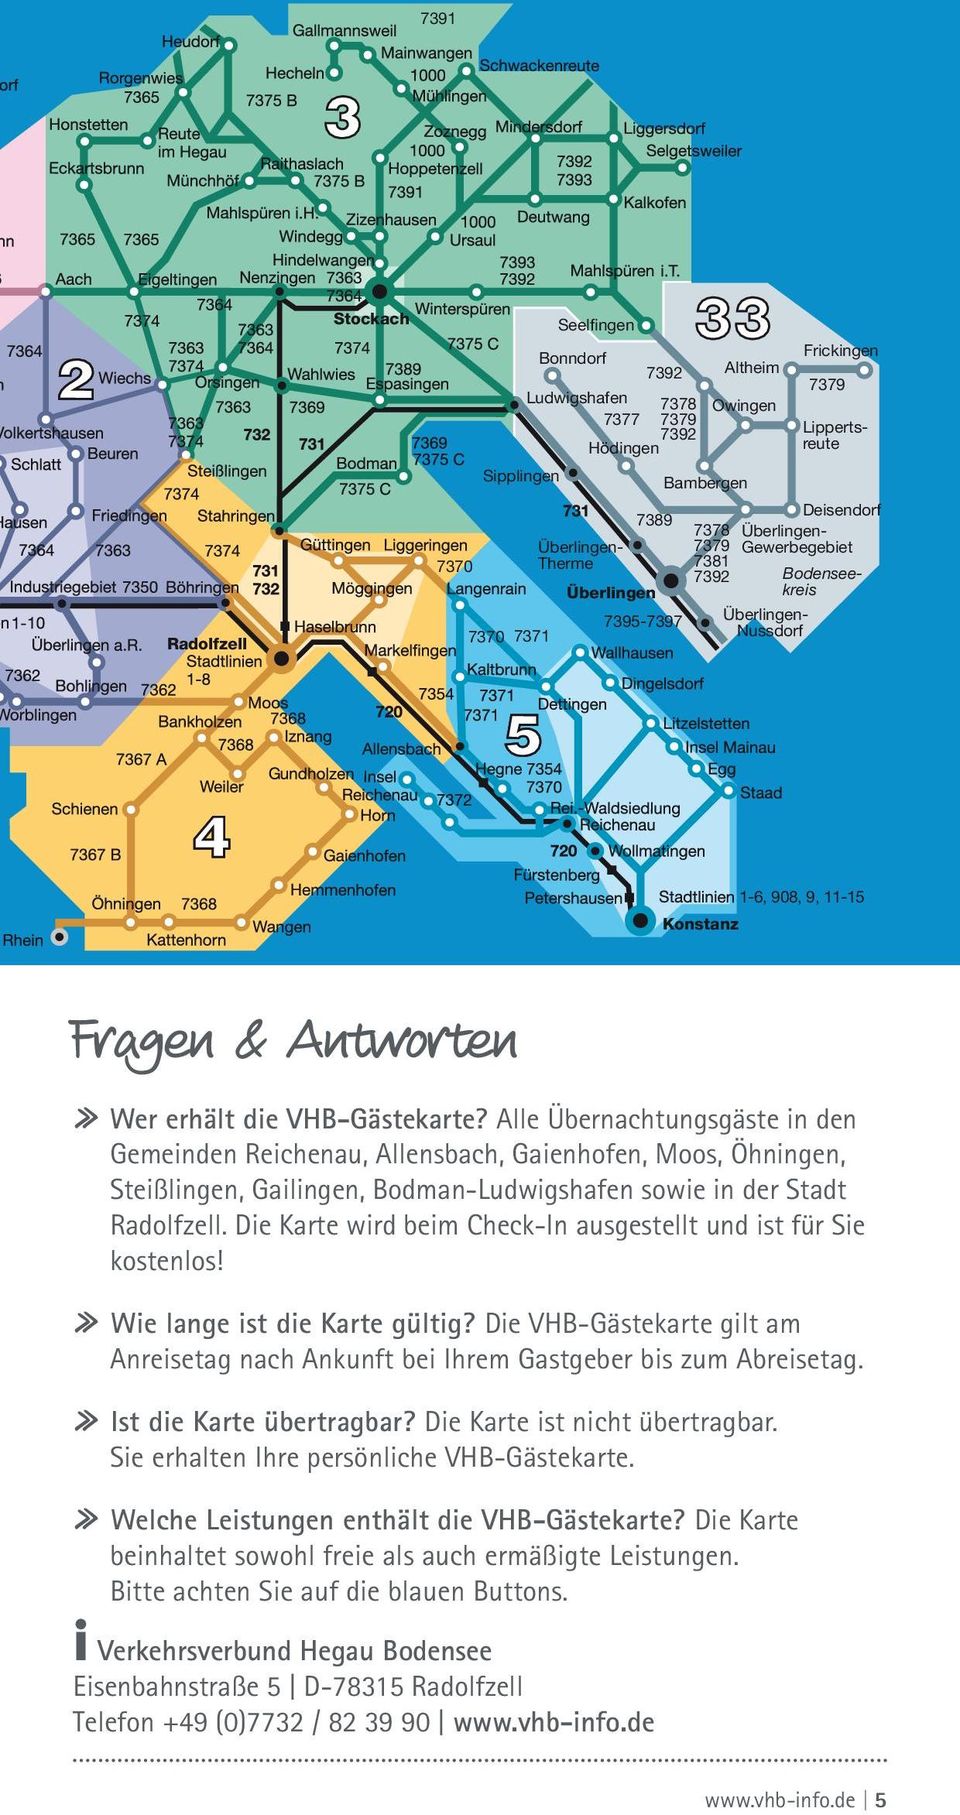 Alle Übernachtungsgäste in den Gemeinden Reichenau, Allensbach, Gaienhofen, Moos, Öhningen, Steißlingen, Gailingen, Bodman-Ludwigshafen sowie in der Stadt Radolfzell.